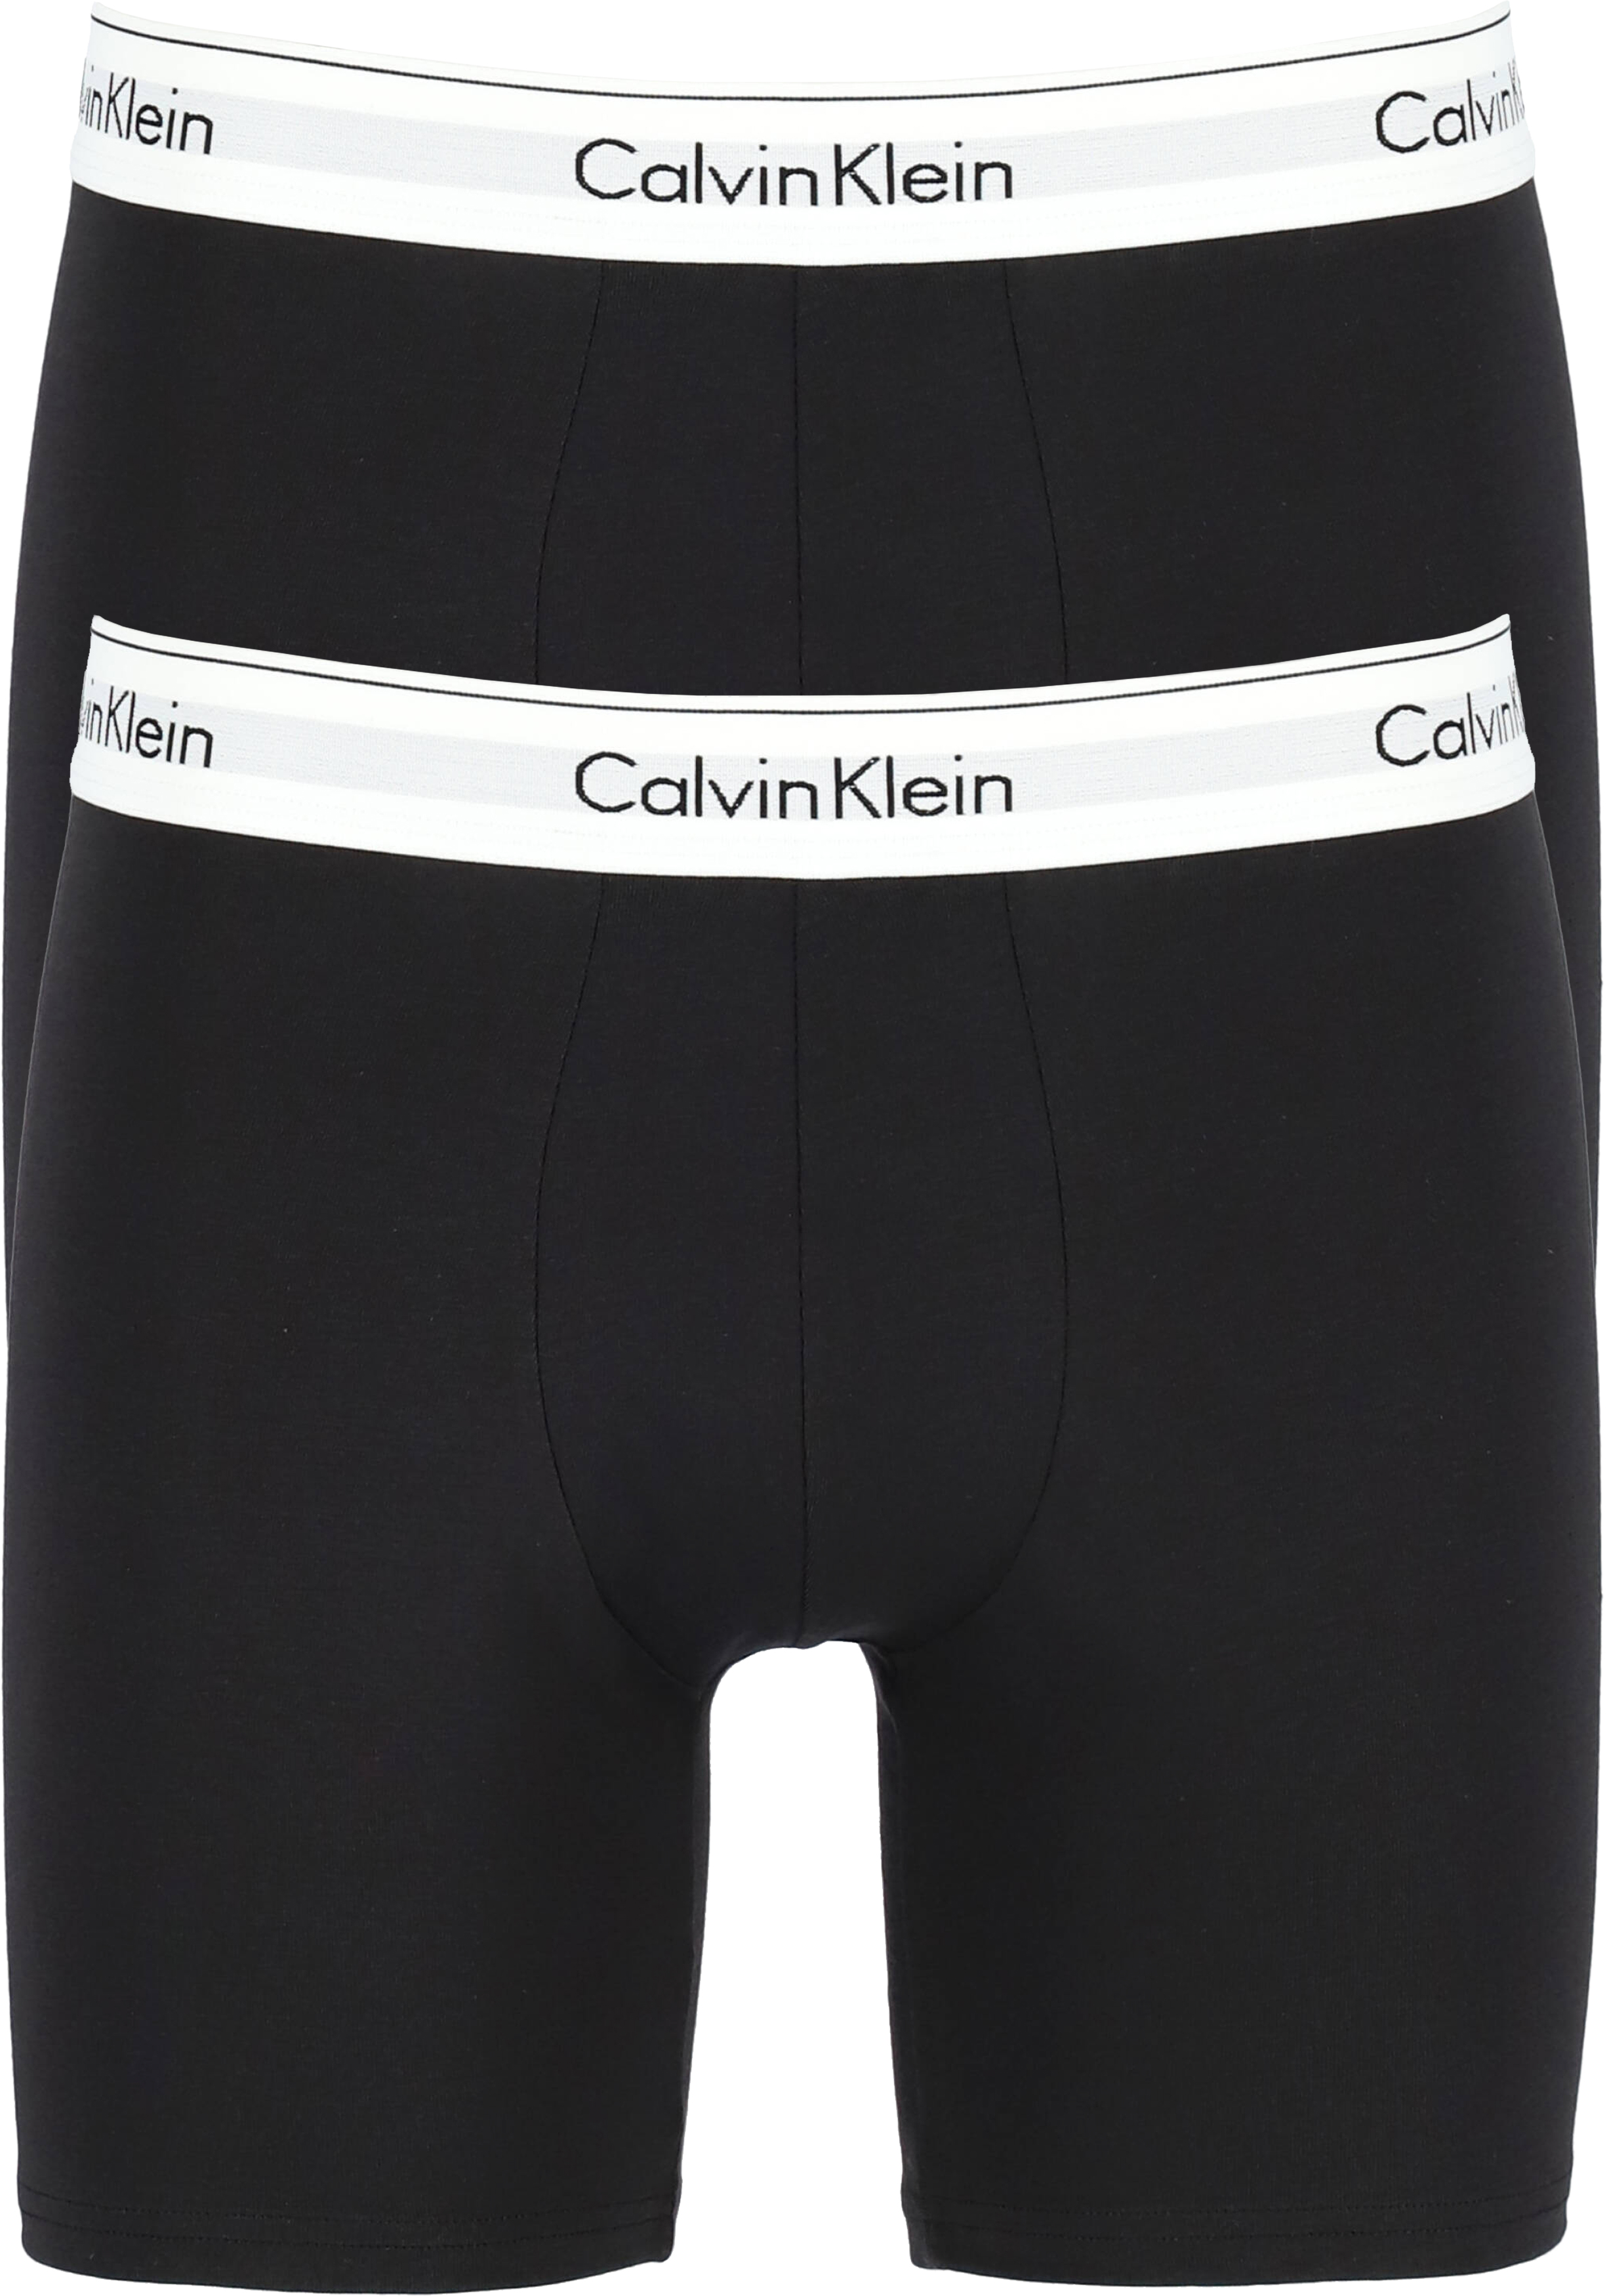 droog fiets heb vertrouwen Calvin Klein Modern Cotton boxer brief (2-pack), heren boxers lang, zwart -  vakantie DEALS: bestel vele artikelen van topmerken met korting